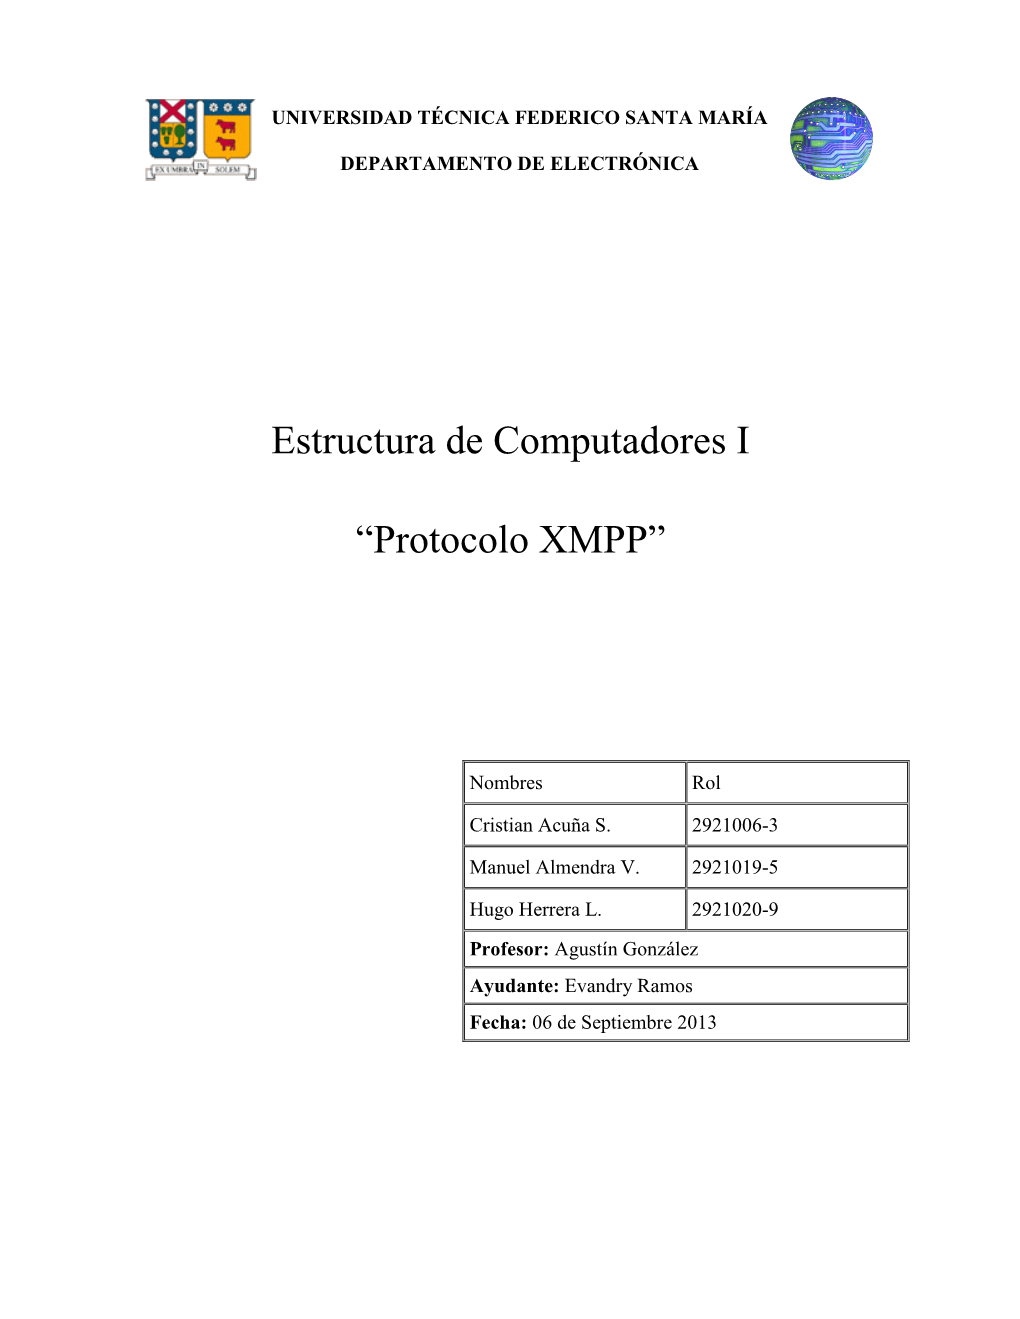 Estructura De Computadores I “Protocolo XMPP”